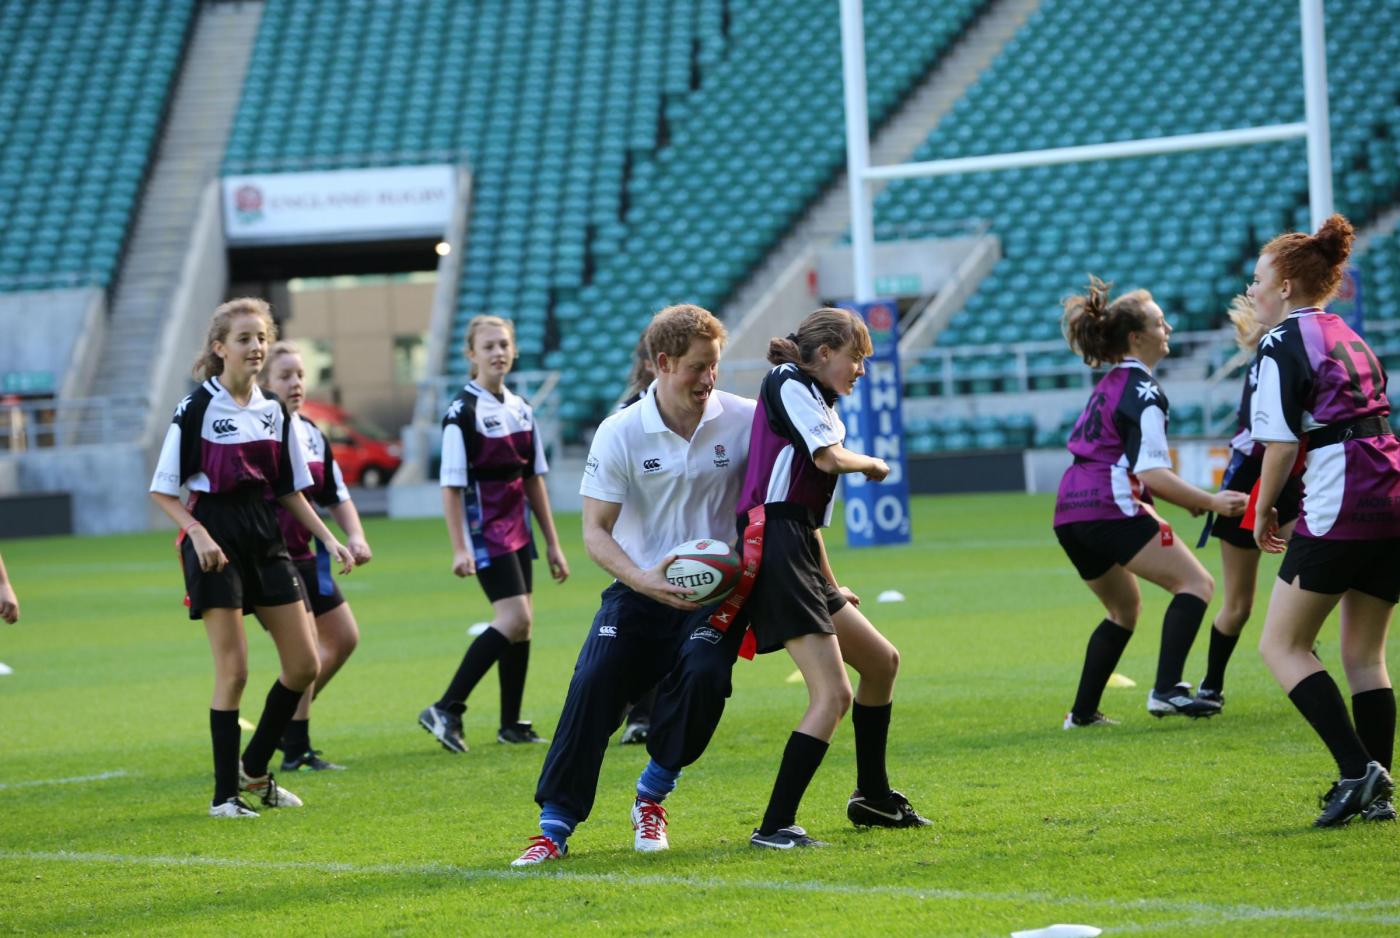 Londra, il Principe Harry gioca a rugby con..delle ragazze04